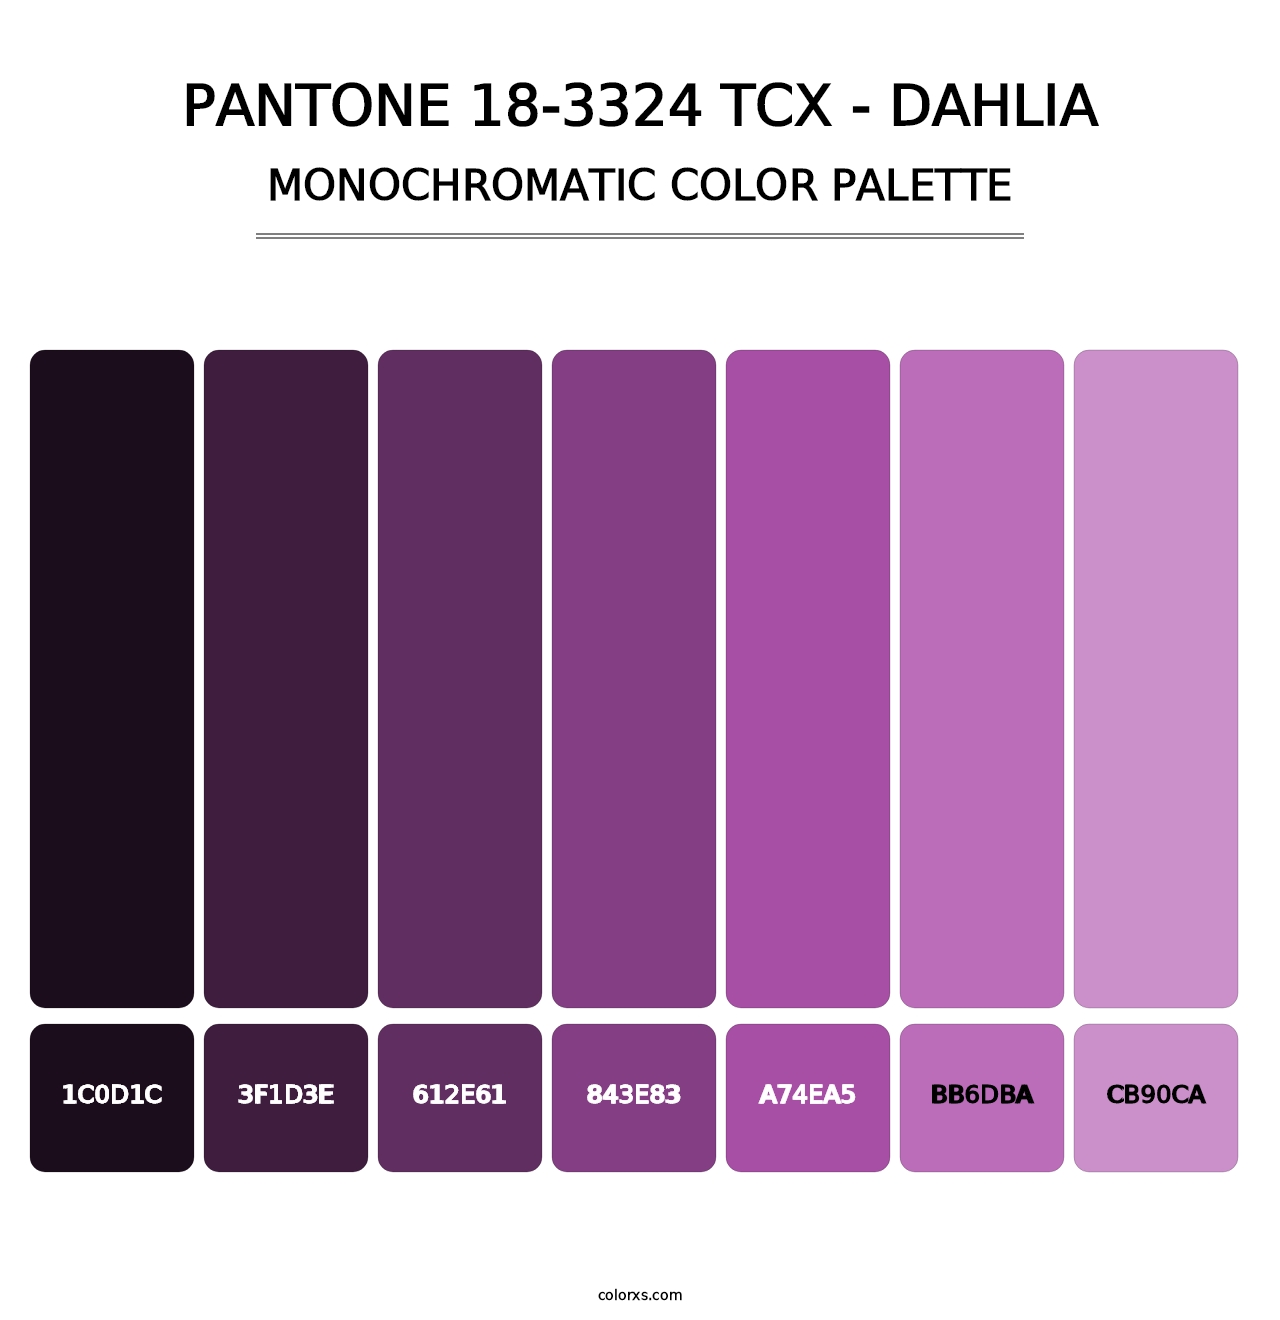 PANTONE 18-3324 TCX - Dahlia - Monochromatic Color Palette